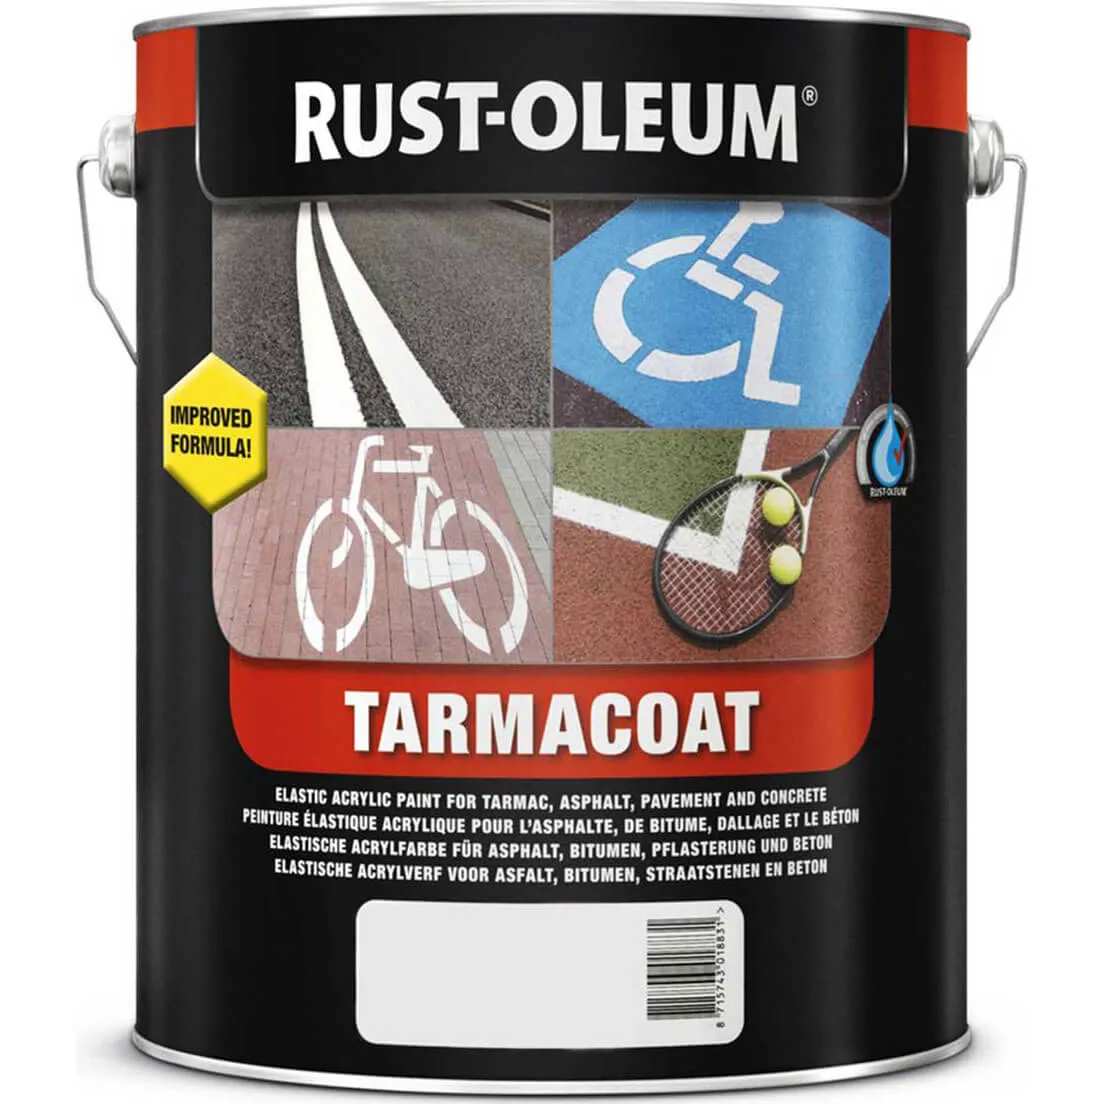 Rust Oleum Tarmacoat Rapid Curing Road Line Paint - Traffic White, 5l